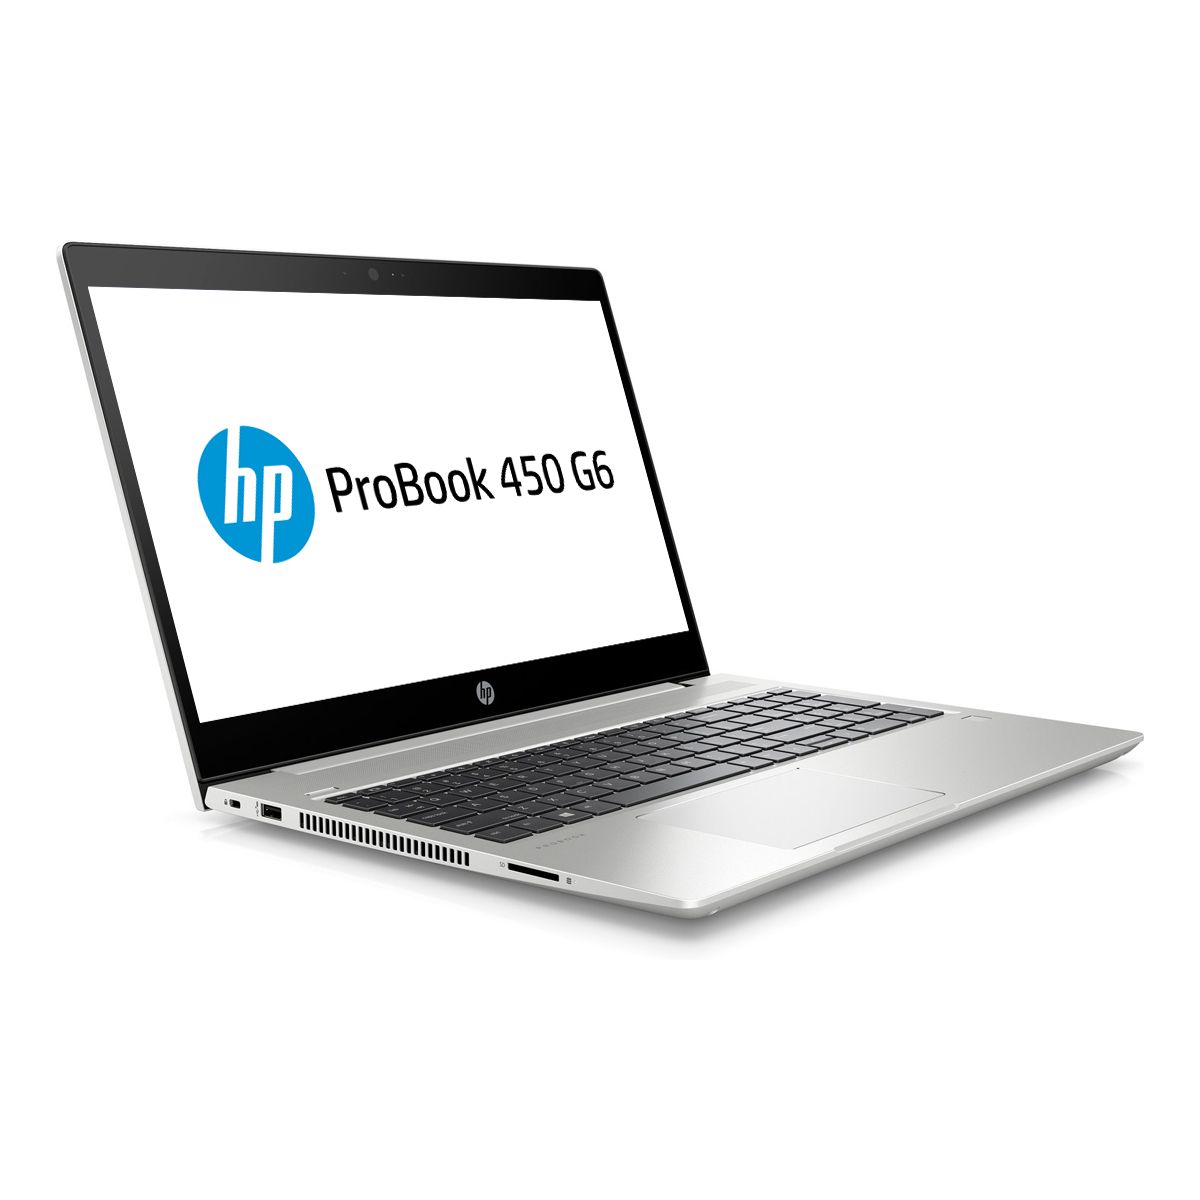 HP ProBook 450 G6, 15.6" FHD, i7-8565U, 8GB , 256GB SSD, MX130 2 - Click Image to Close